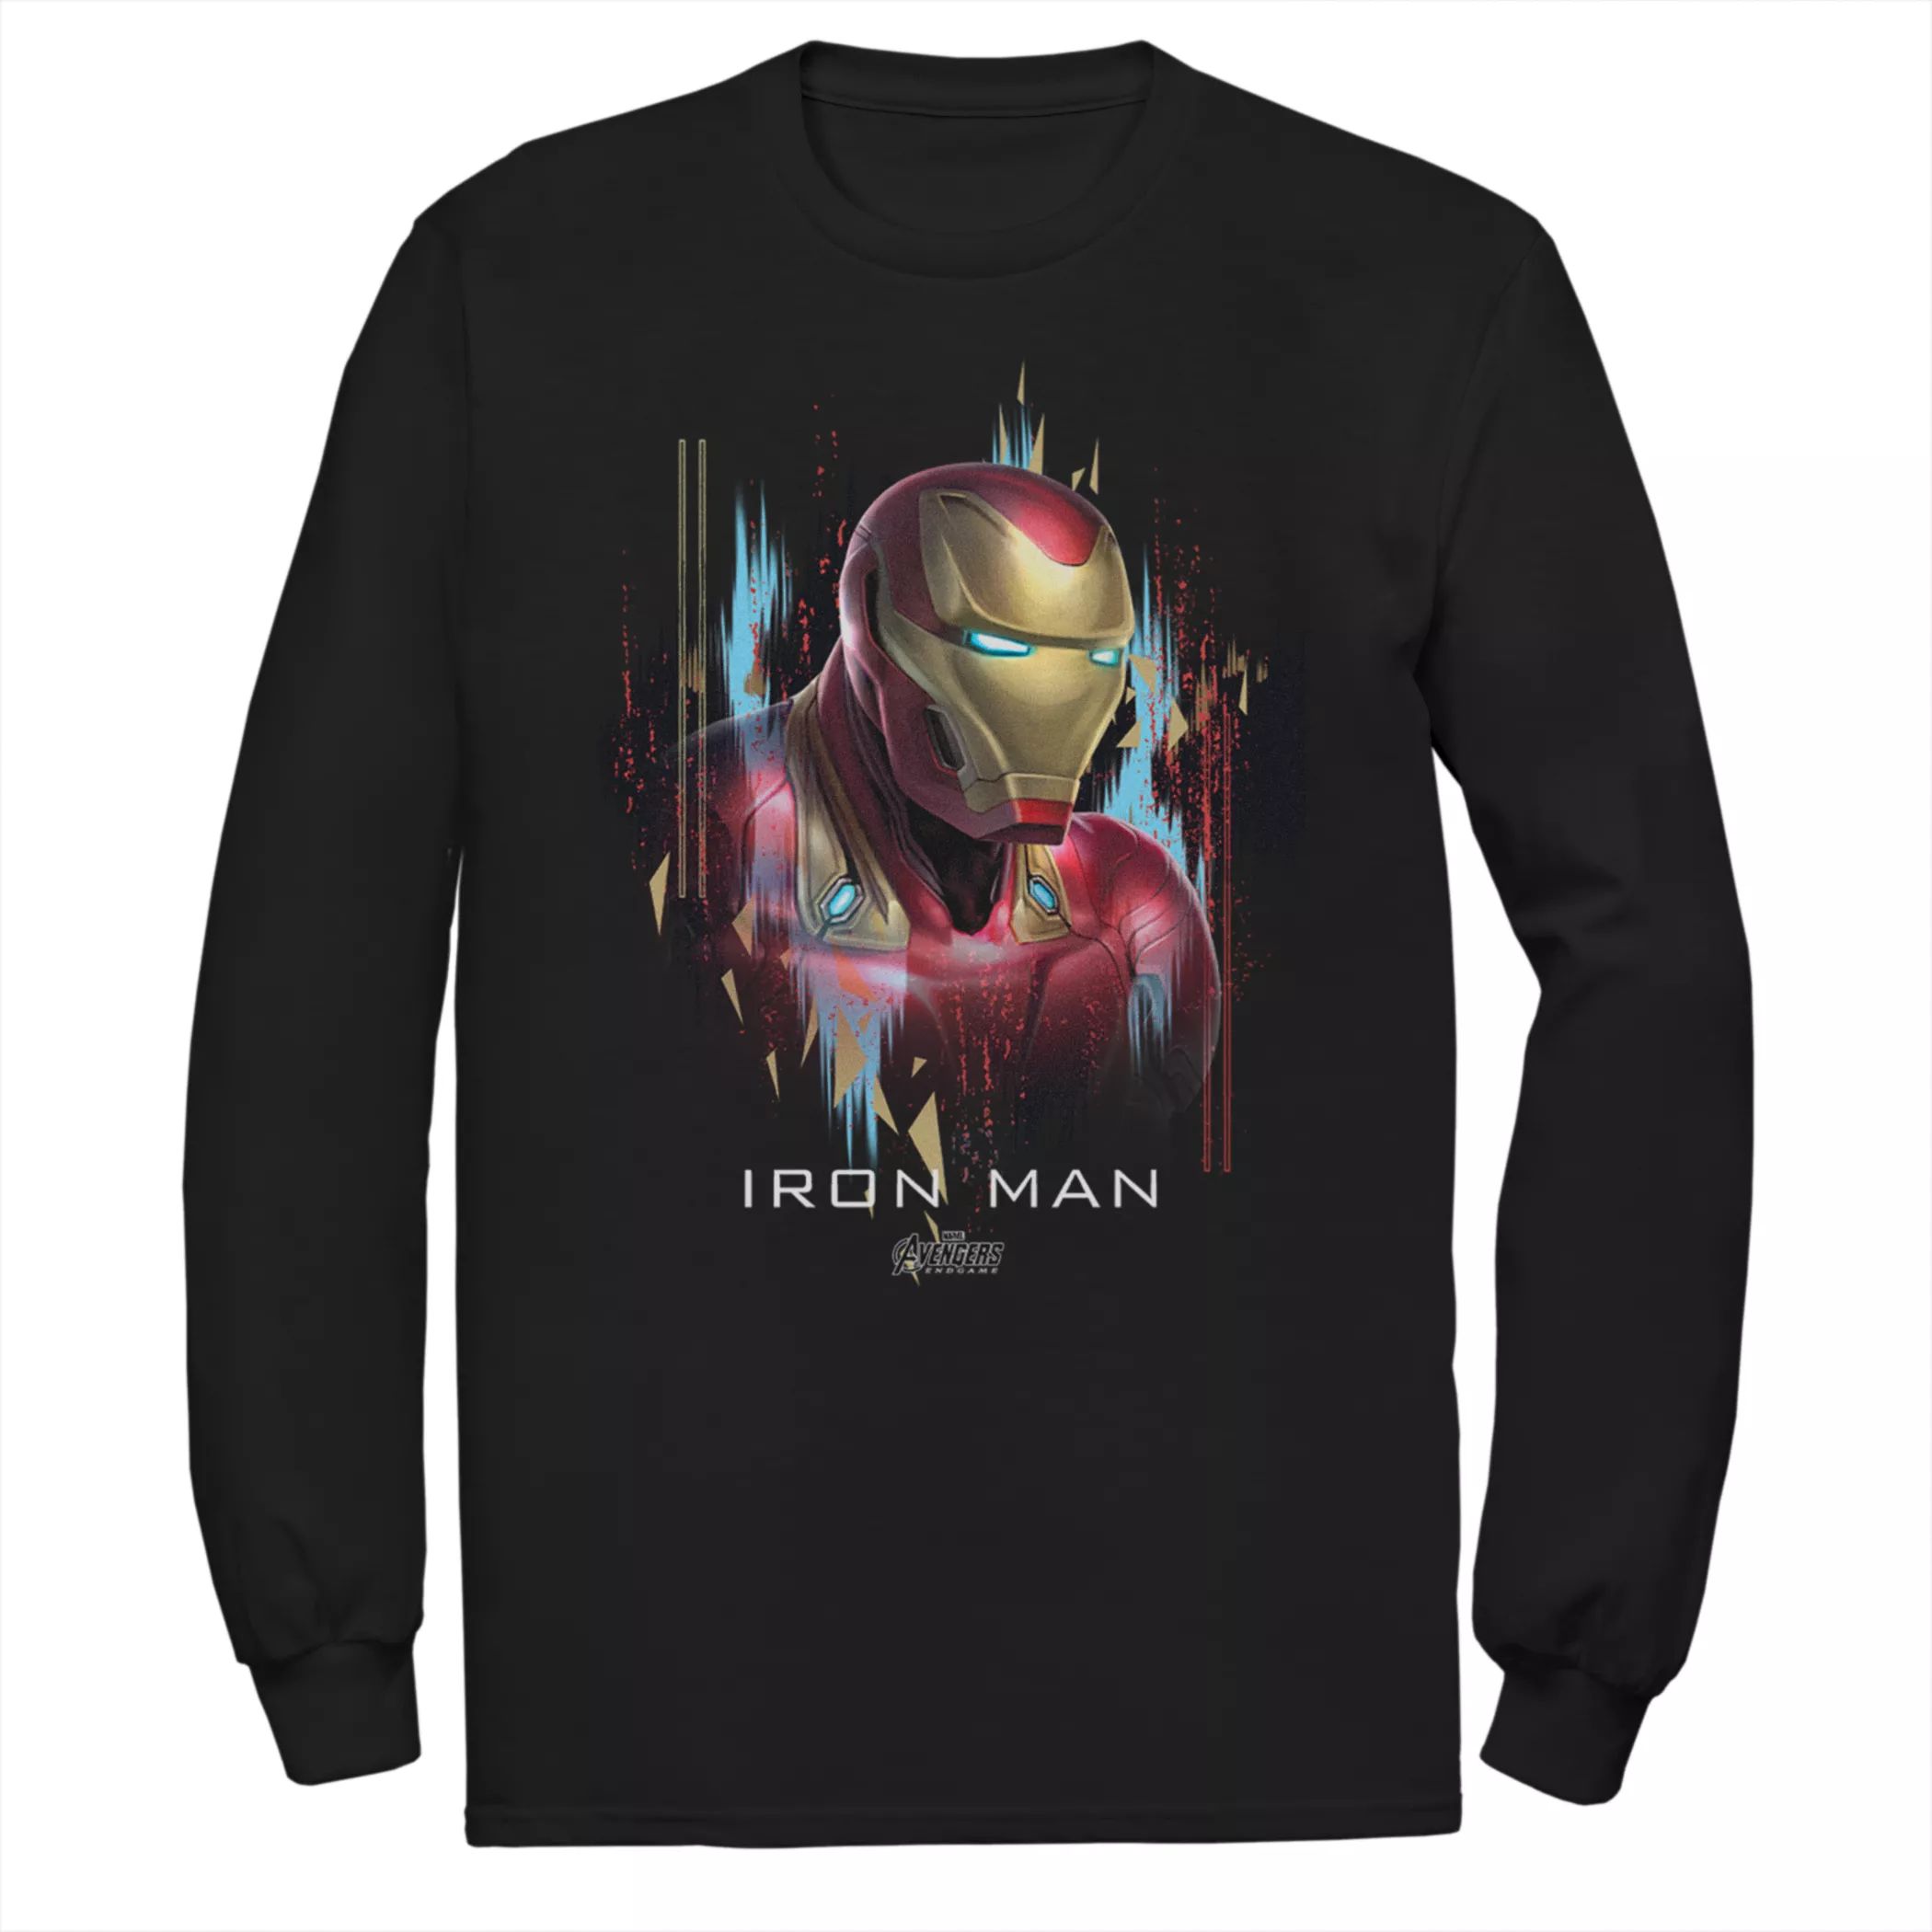 Мужская футболка с портретом Marvel Avengers Iron Man Licensed Character мужская футболка marvel iron man arc reactor heart с портретом licensed character